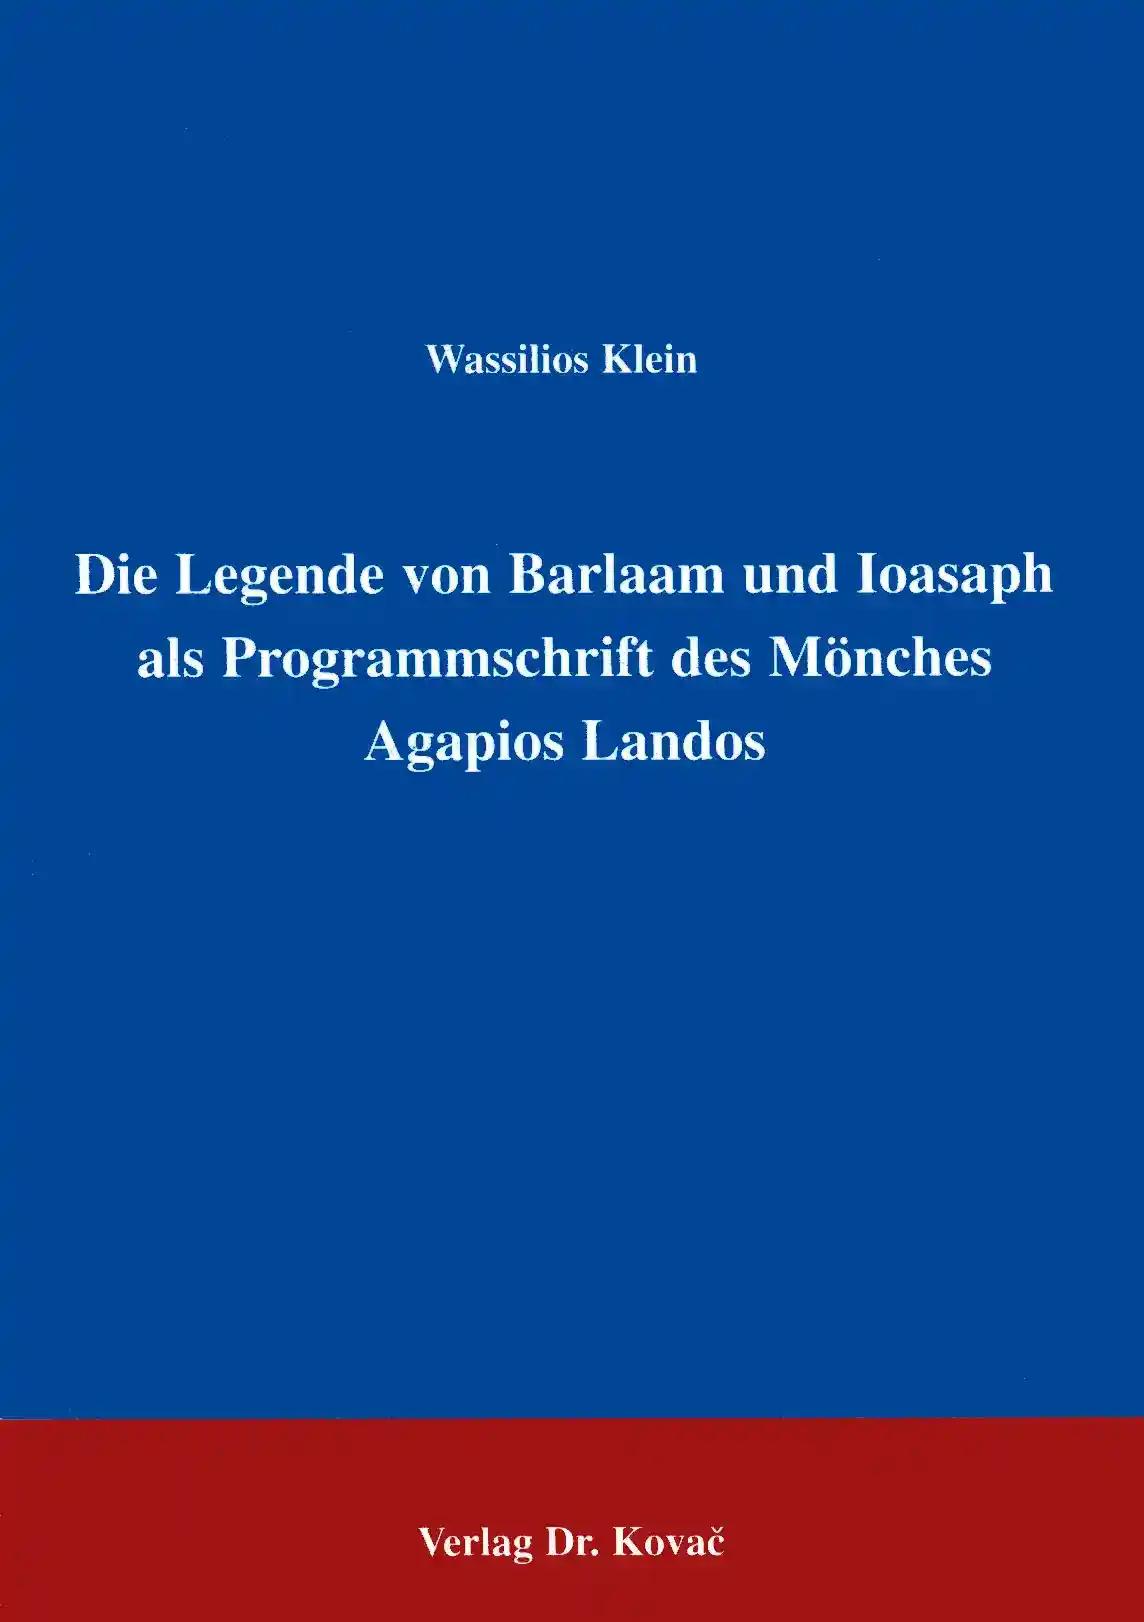 Die Legende von Barlaam und Ioasaph als Programmschrift des MÃ nches Agapios Landos, - Wassilios Klein